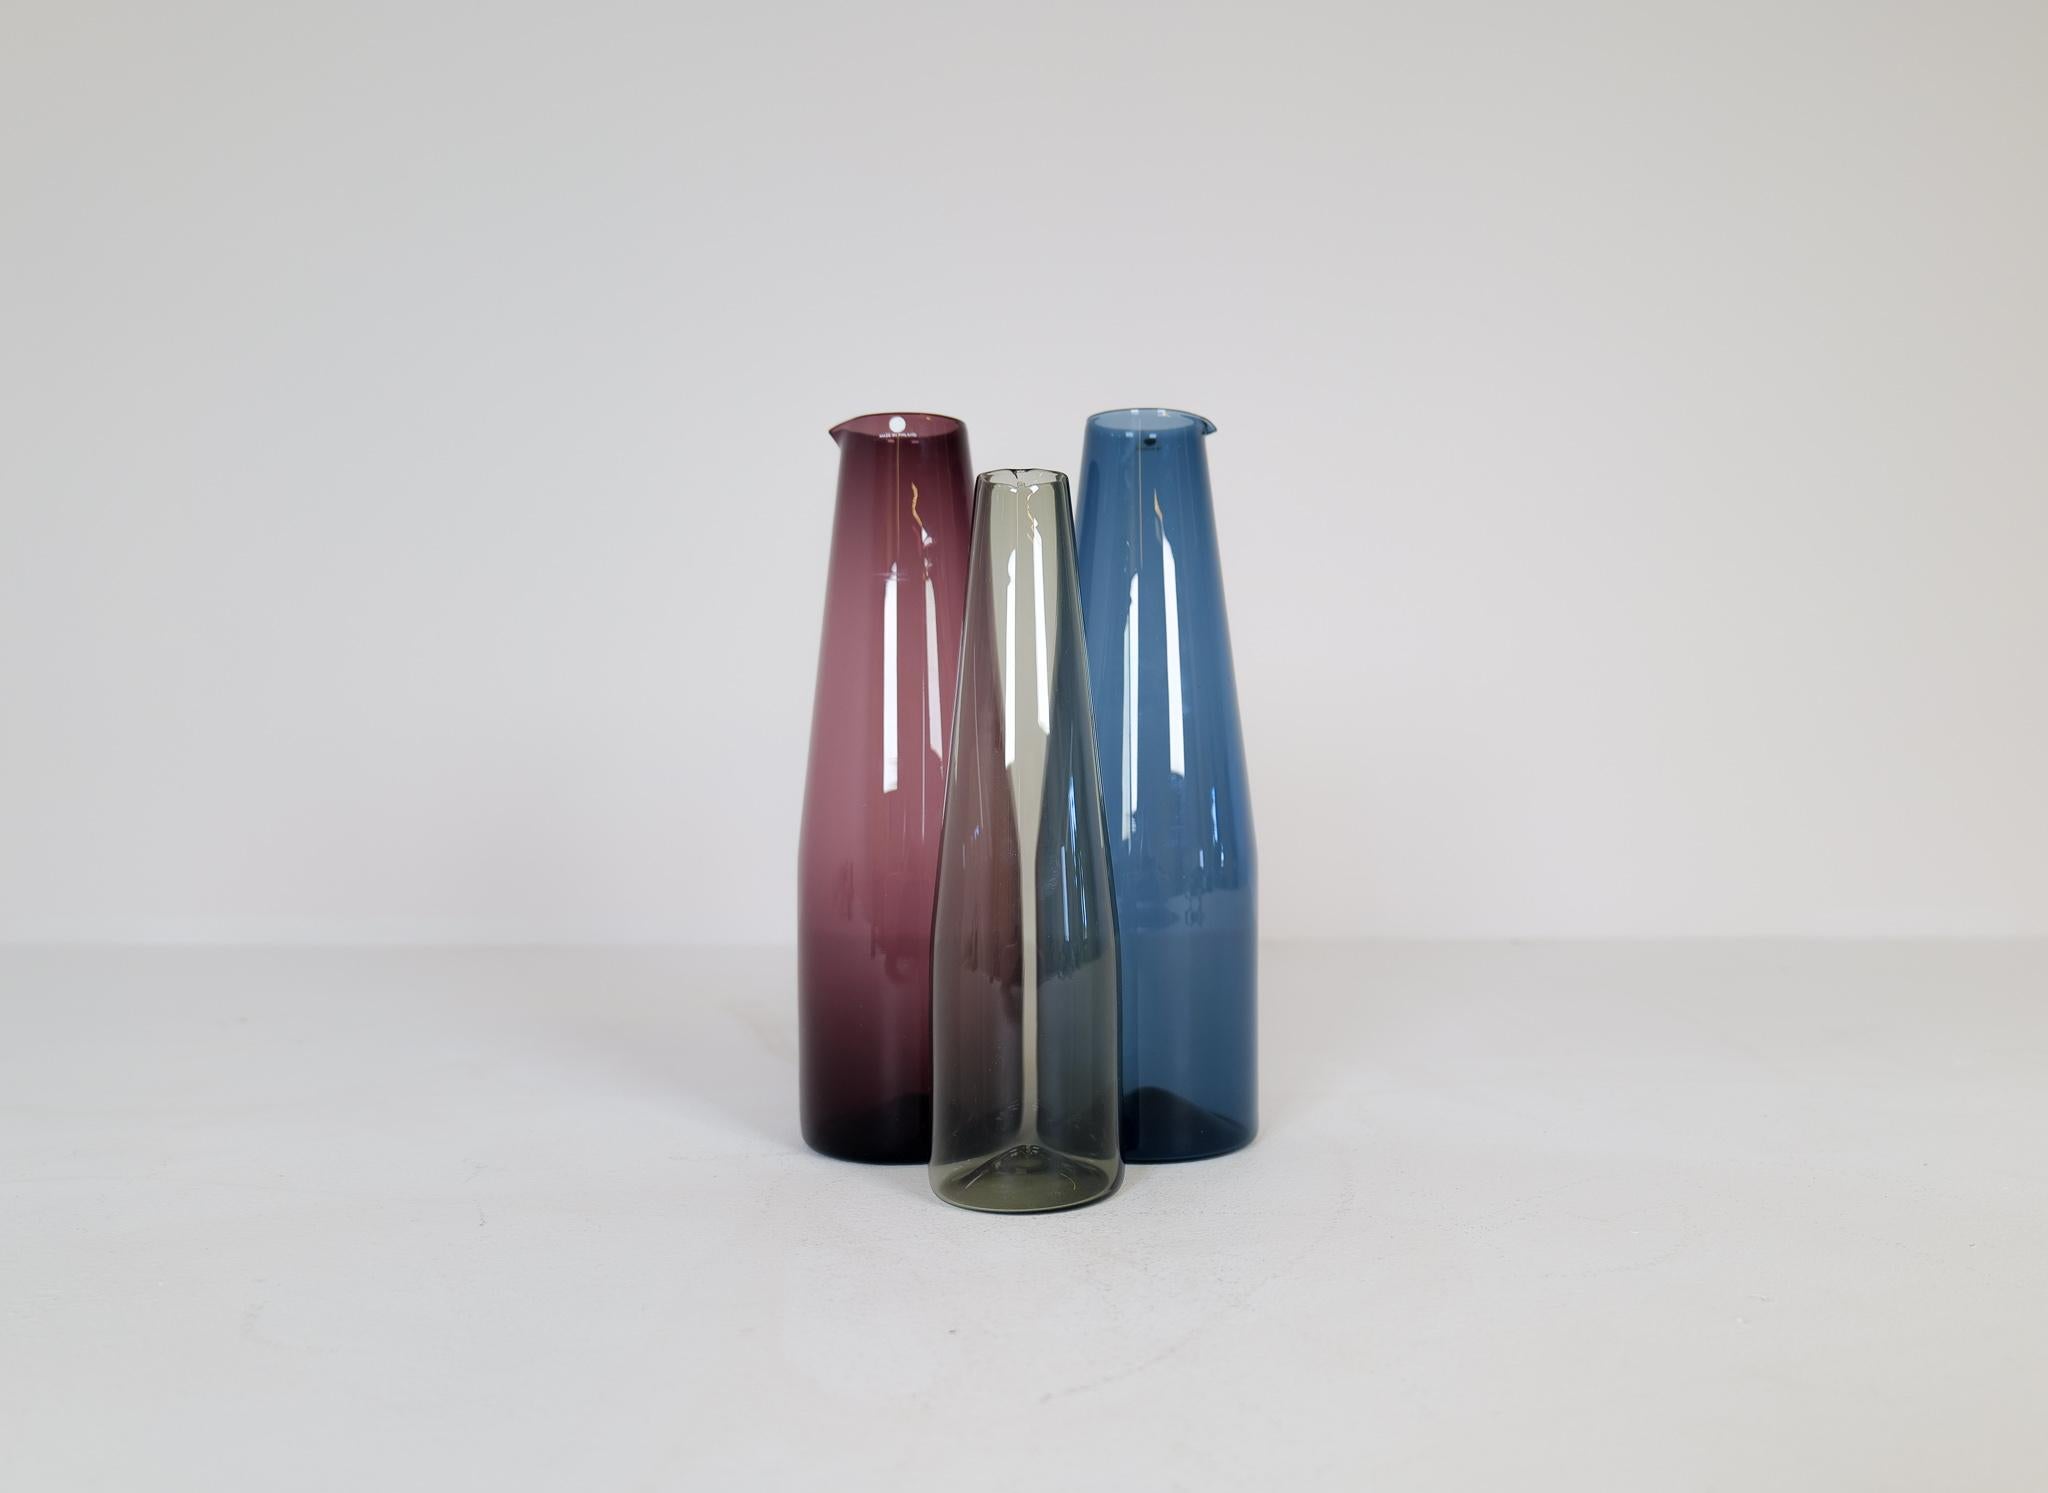 Wunderschöne, handgefertigte Kunstkaraffen, die 1956-1962 von Iittala hergestellt und von Timo Sarpaneva entworfen wurden. Erstaunlich gearbeitet mit einer schönen tiefroten und blauen Farbe und einer kleineren in grau / sandfarben. 

Ein sehr guter